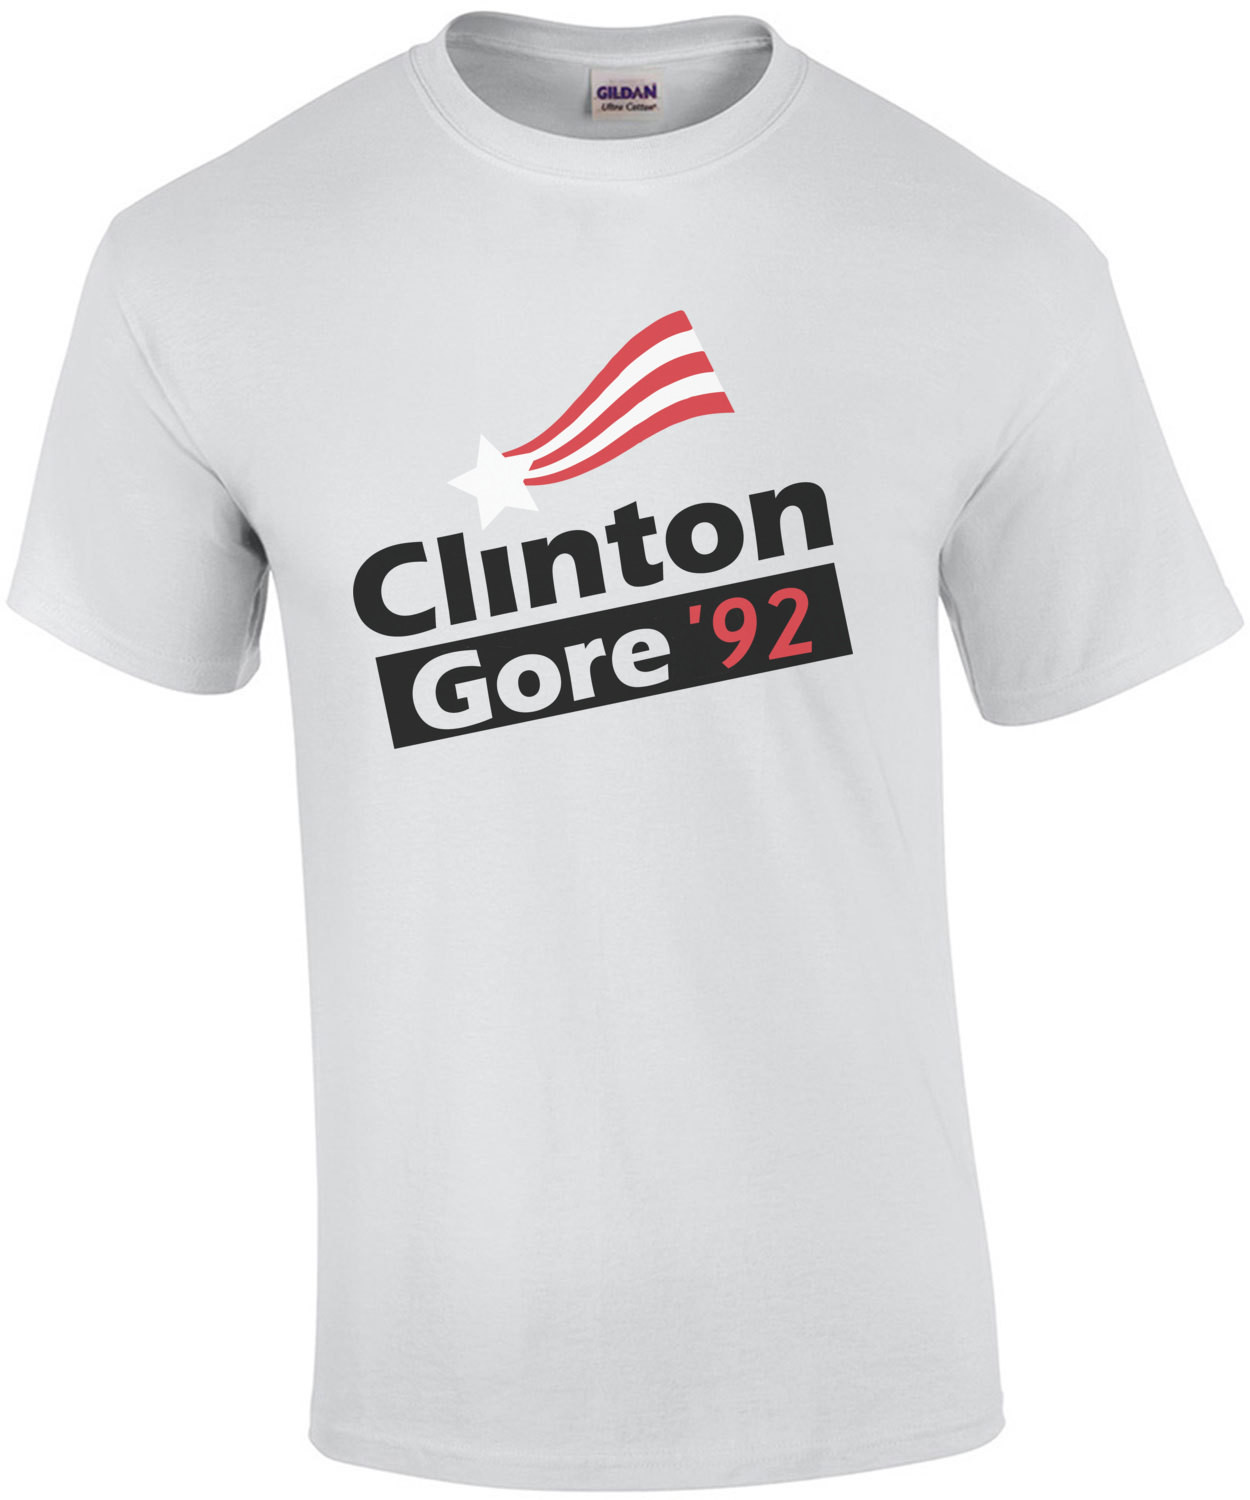 Clinton Gore 92 vintage democratic t-shirt